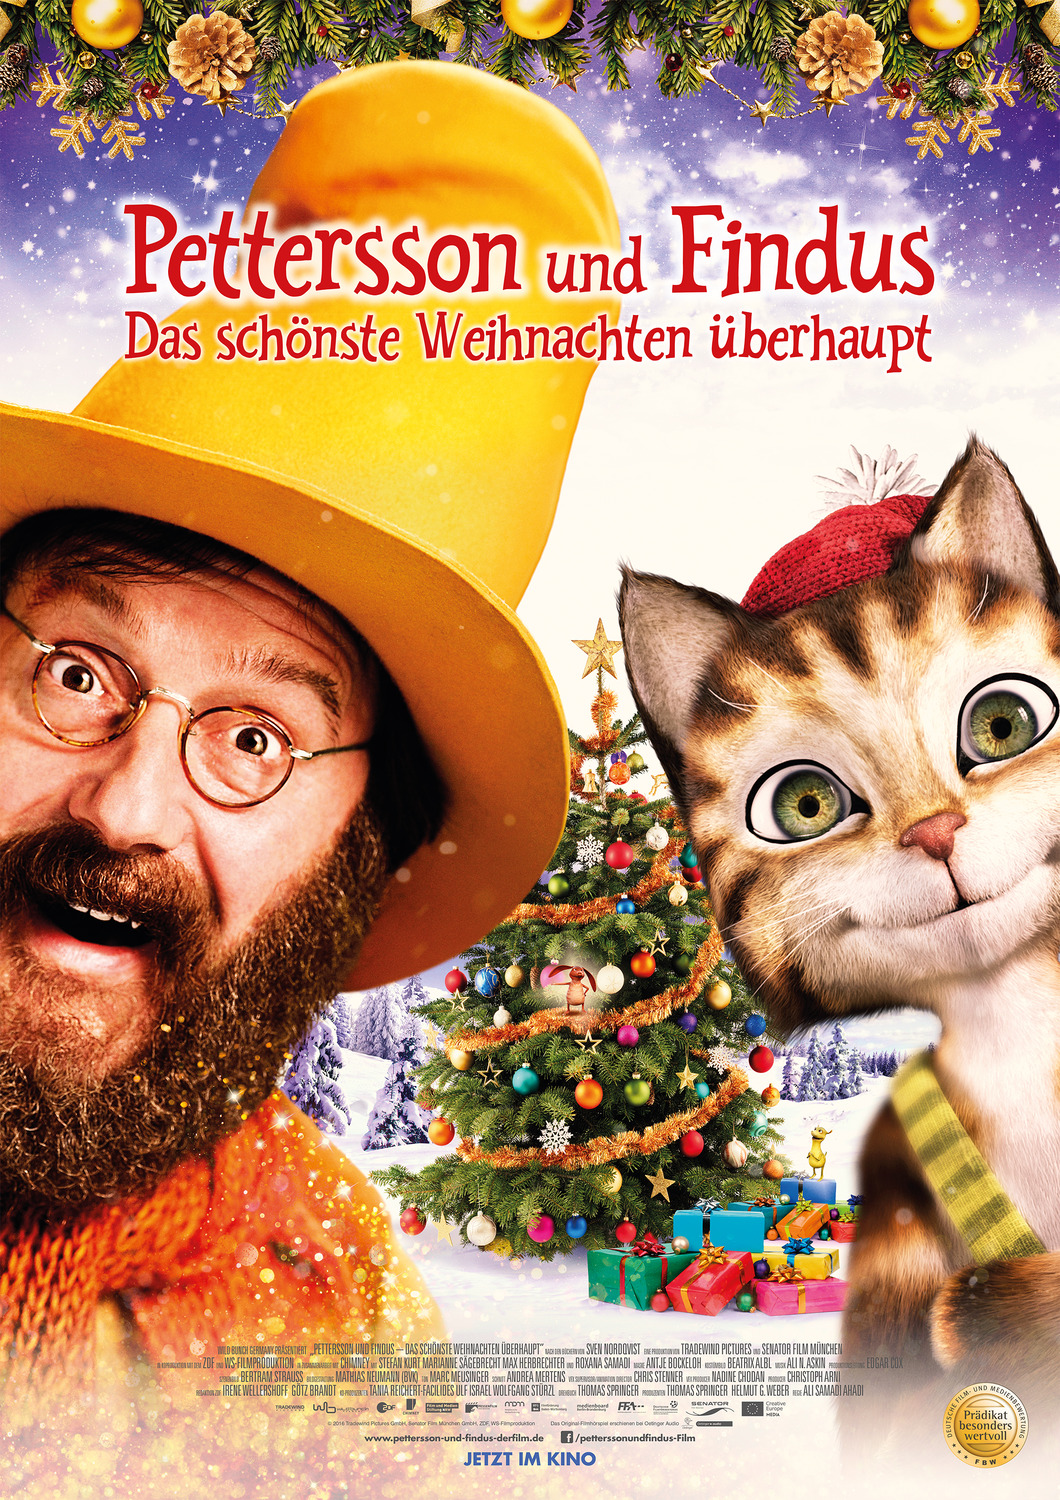 Extra Large Movie Poster Image for Pettersson und Findus 2 - Das schönste Weihnachten überhaupt 